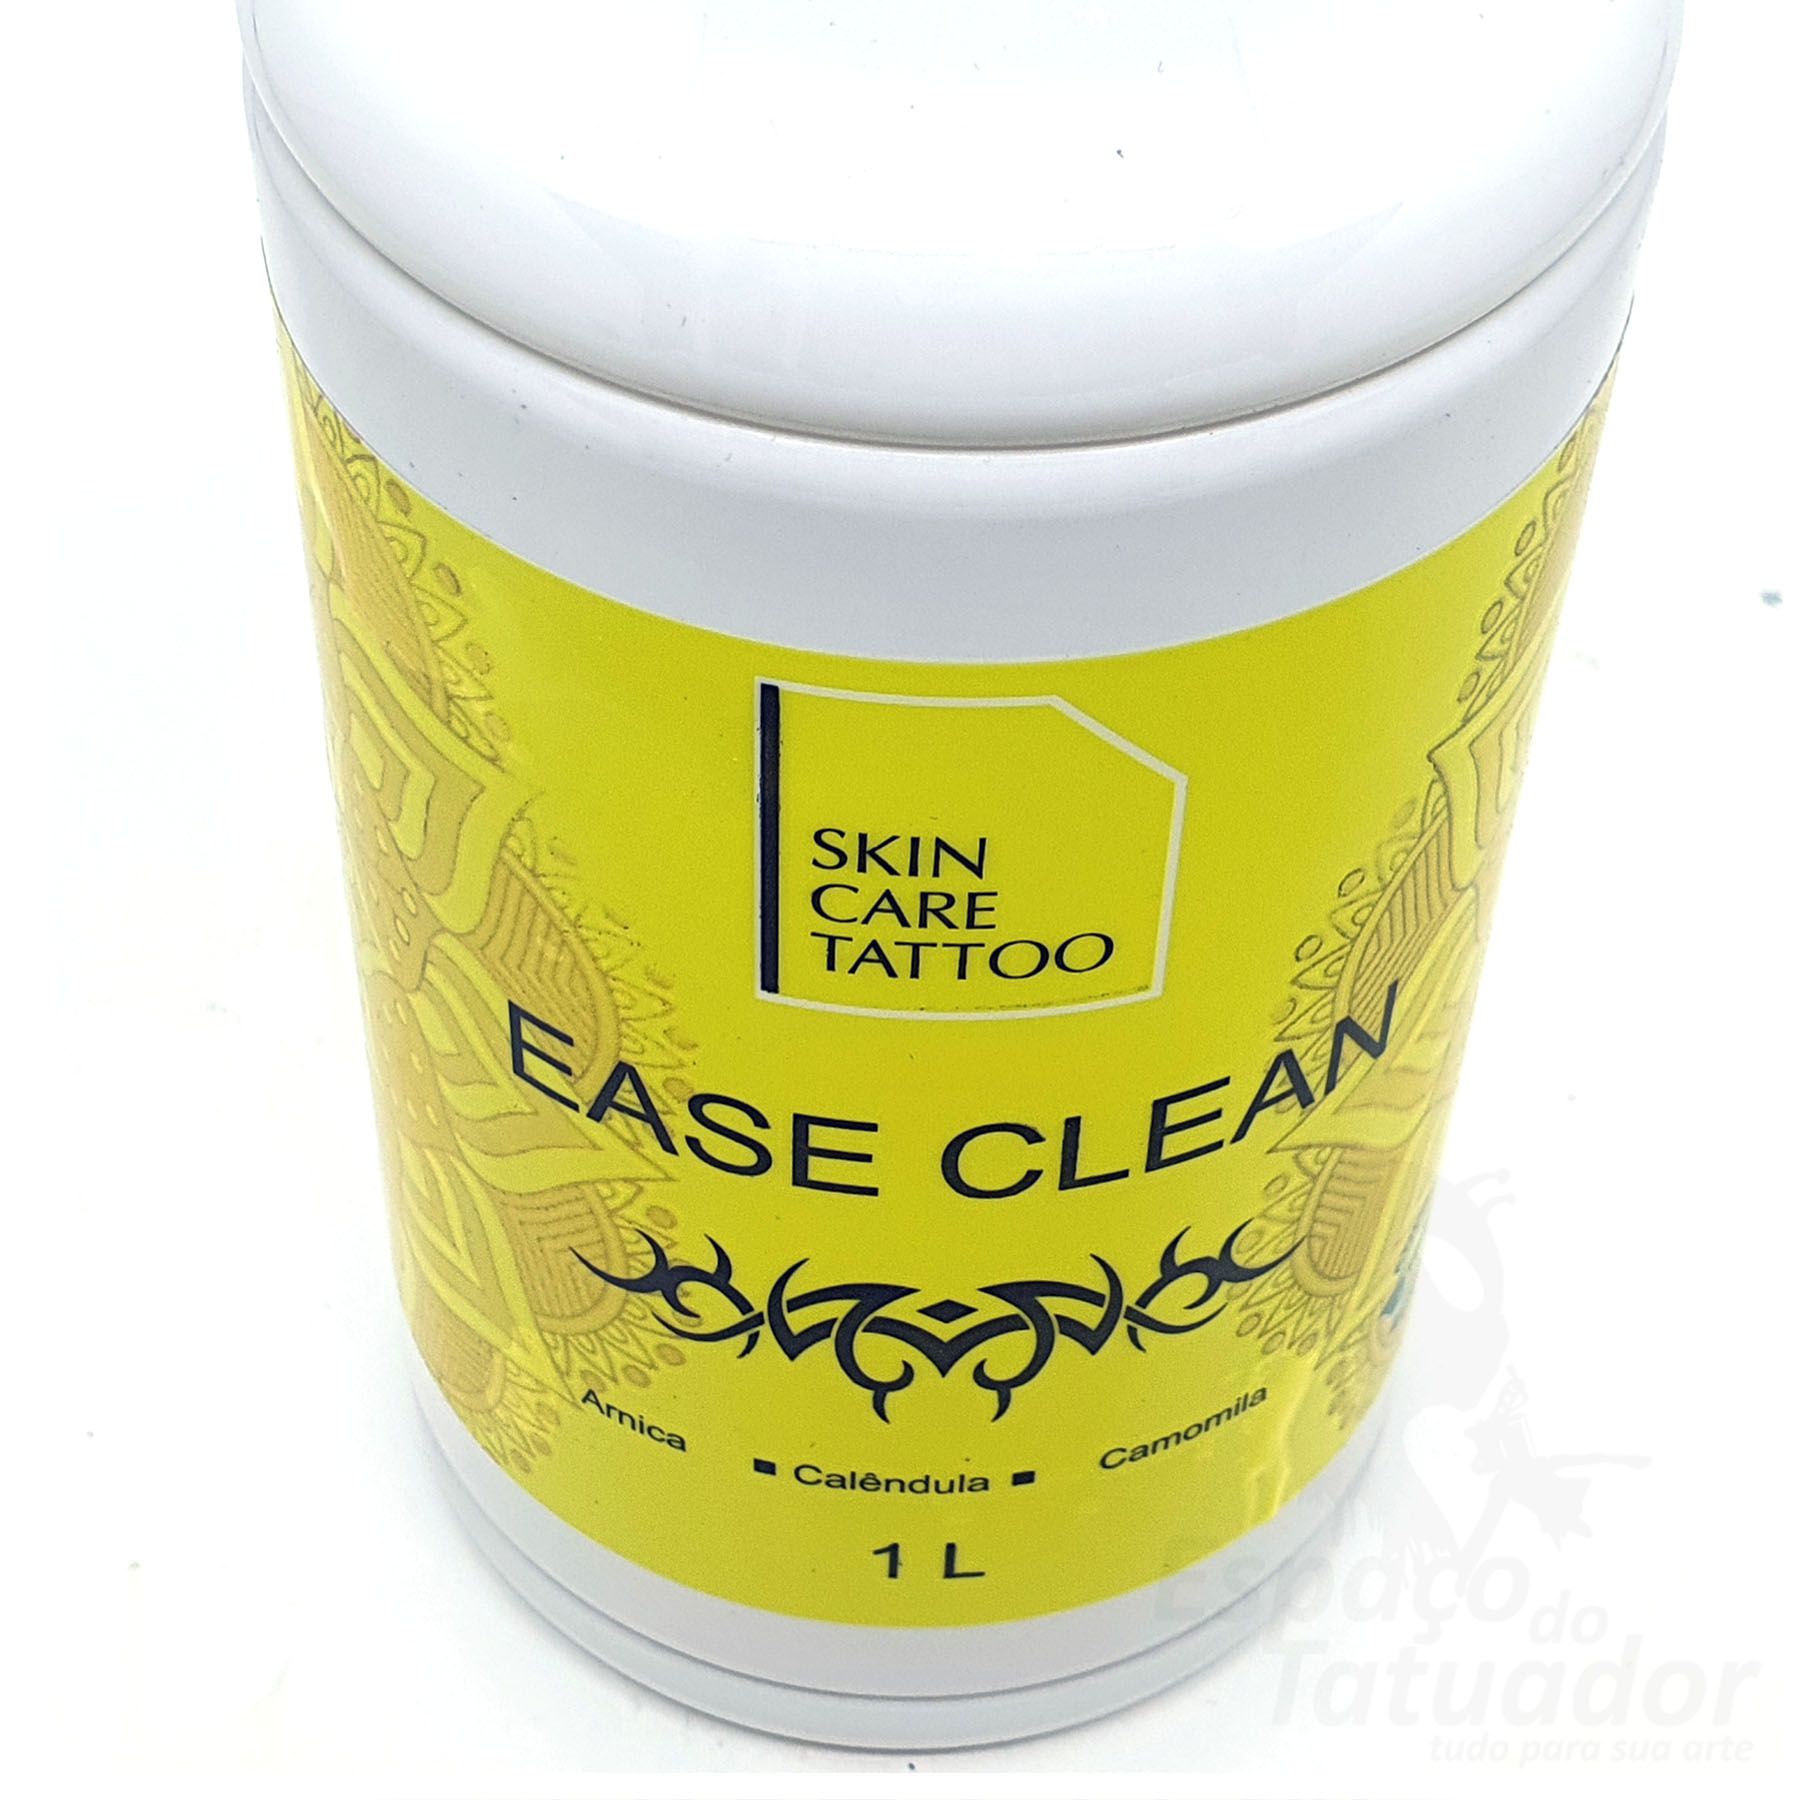 Ease Clean - Skin Care Tattoo - 1L - Foto 3